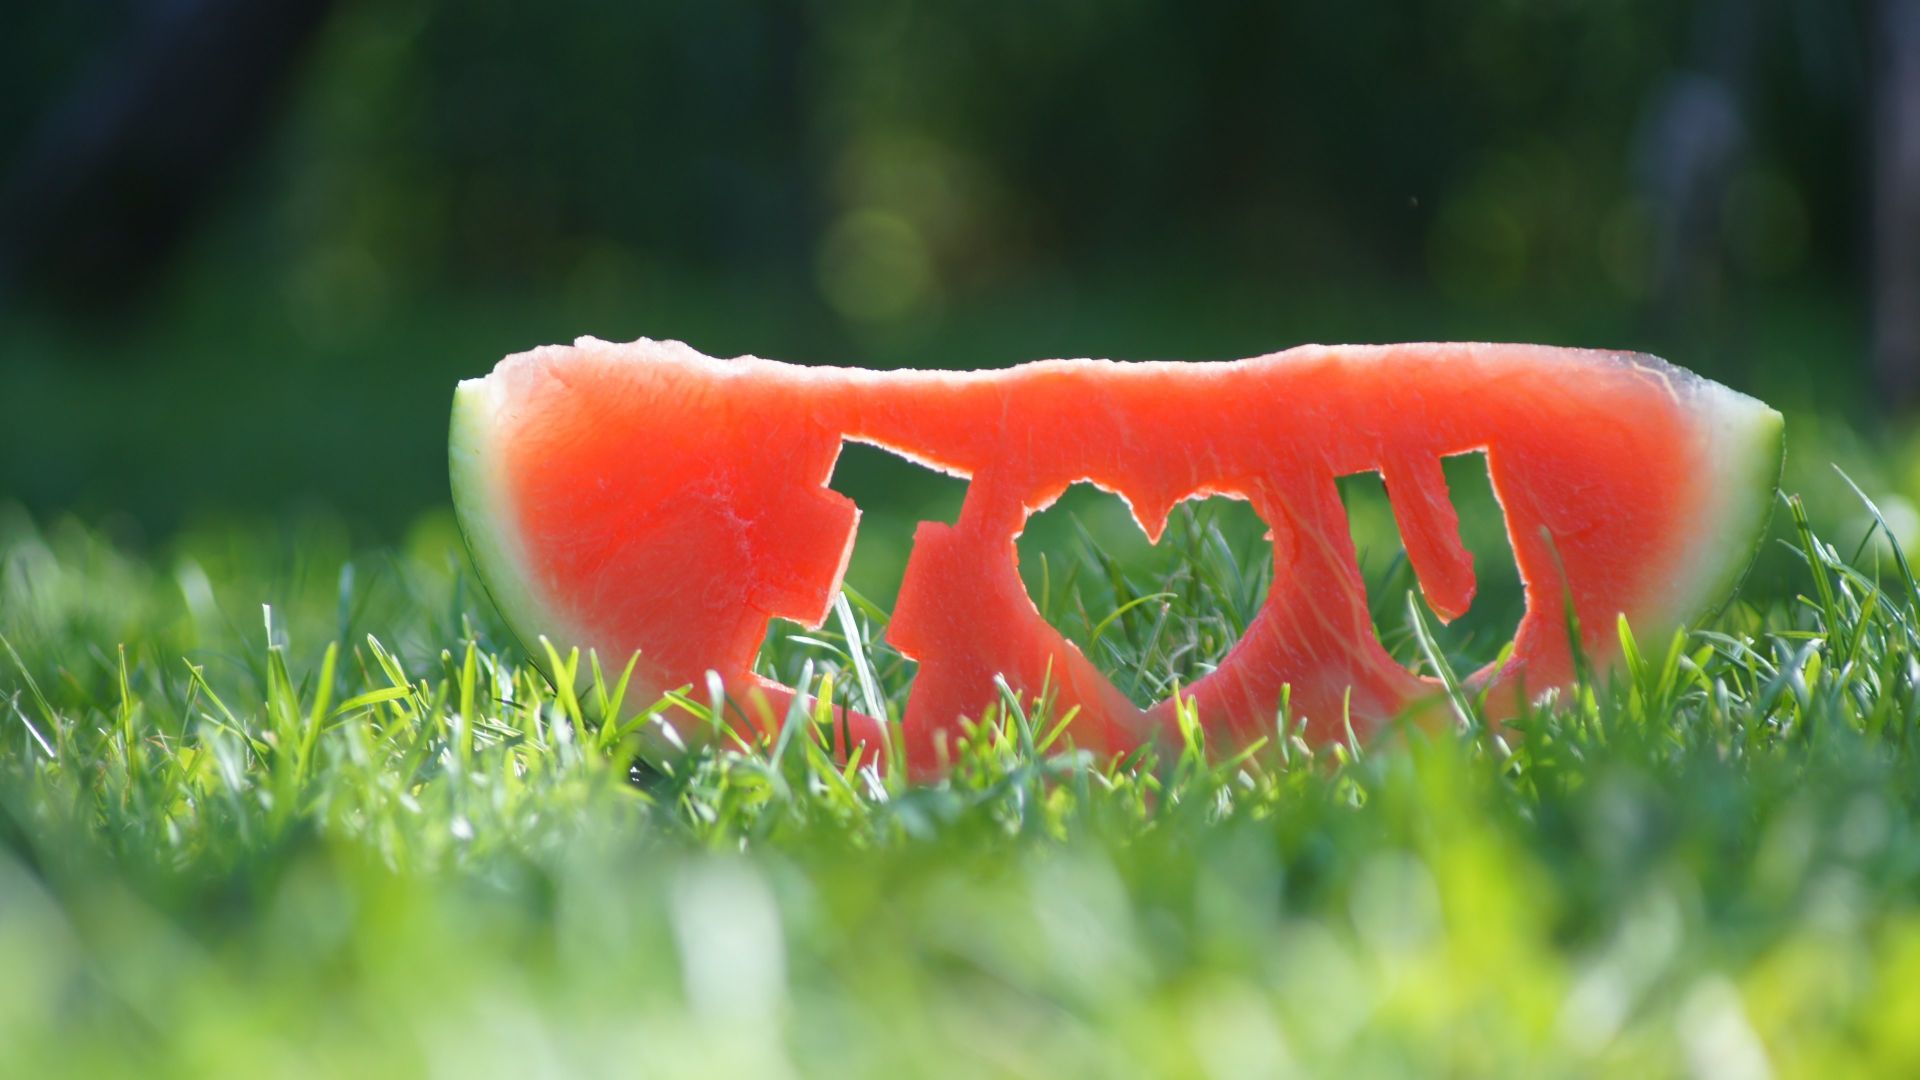 фото любовь, арбуз, love image, watermelon, grass, 4k (horizontal)